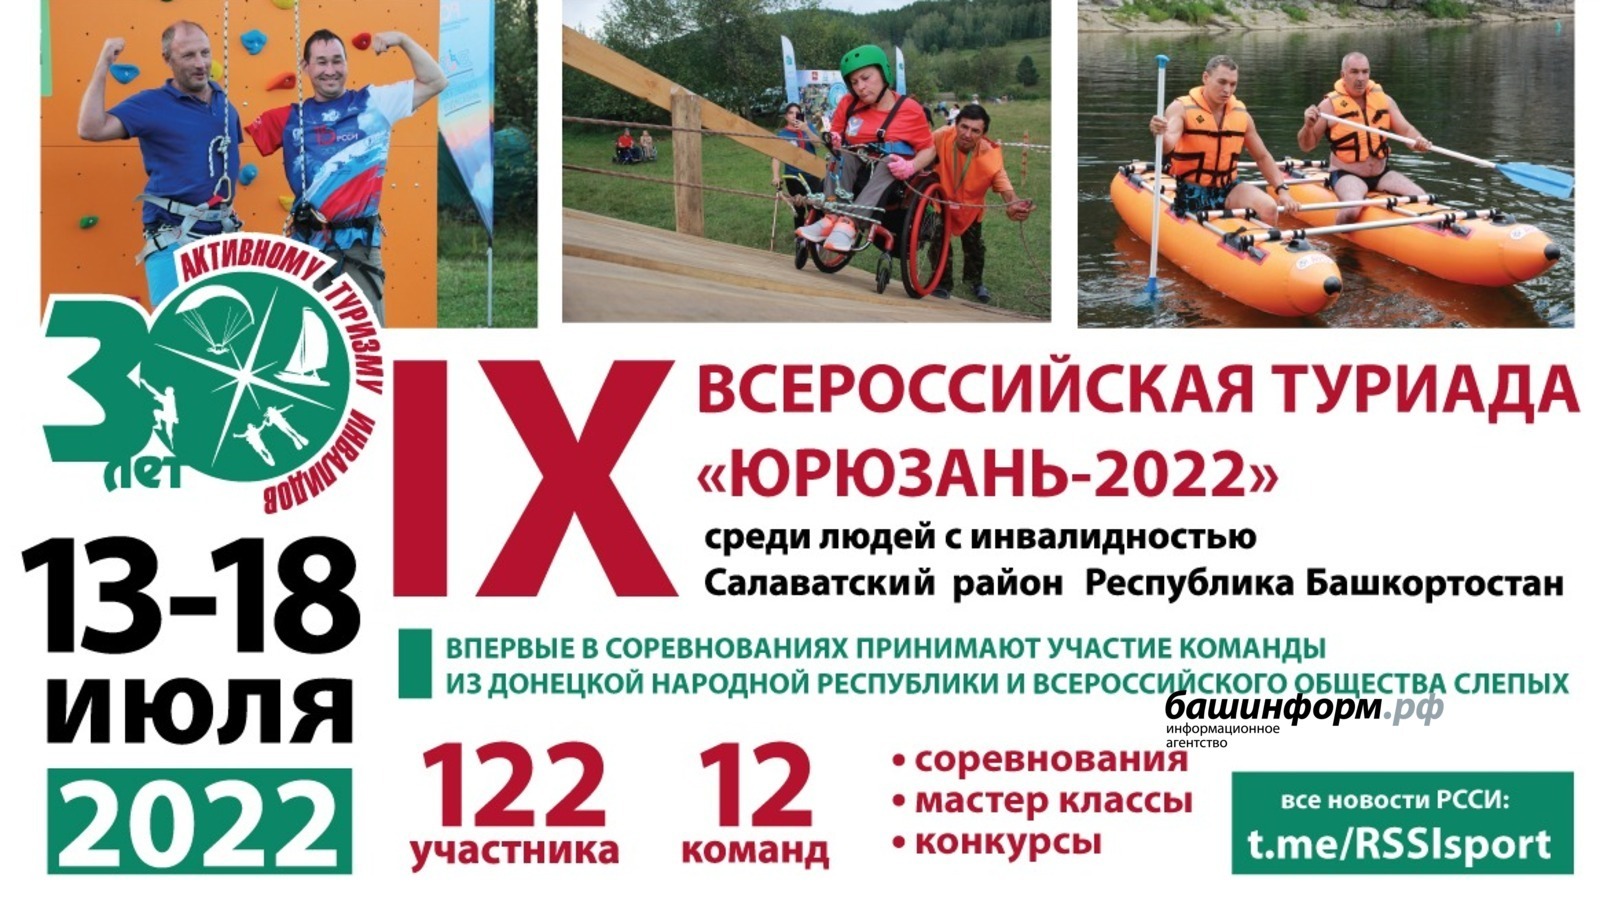 В Башкирии в девятый раз пройдет всероссийская туриада «Юрюзань-2022» среди людей с инвалидностью